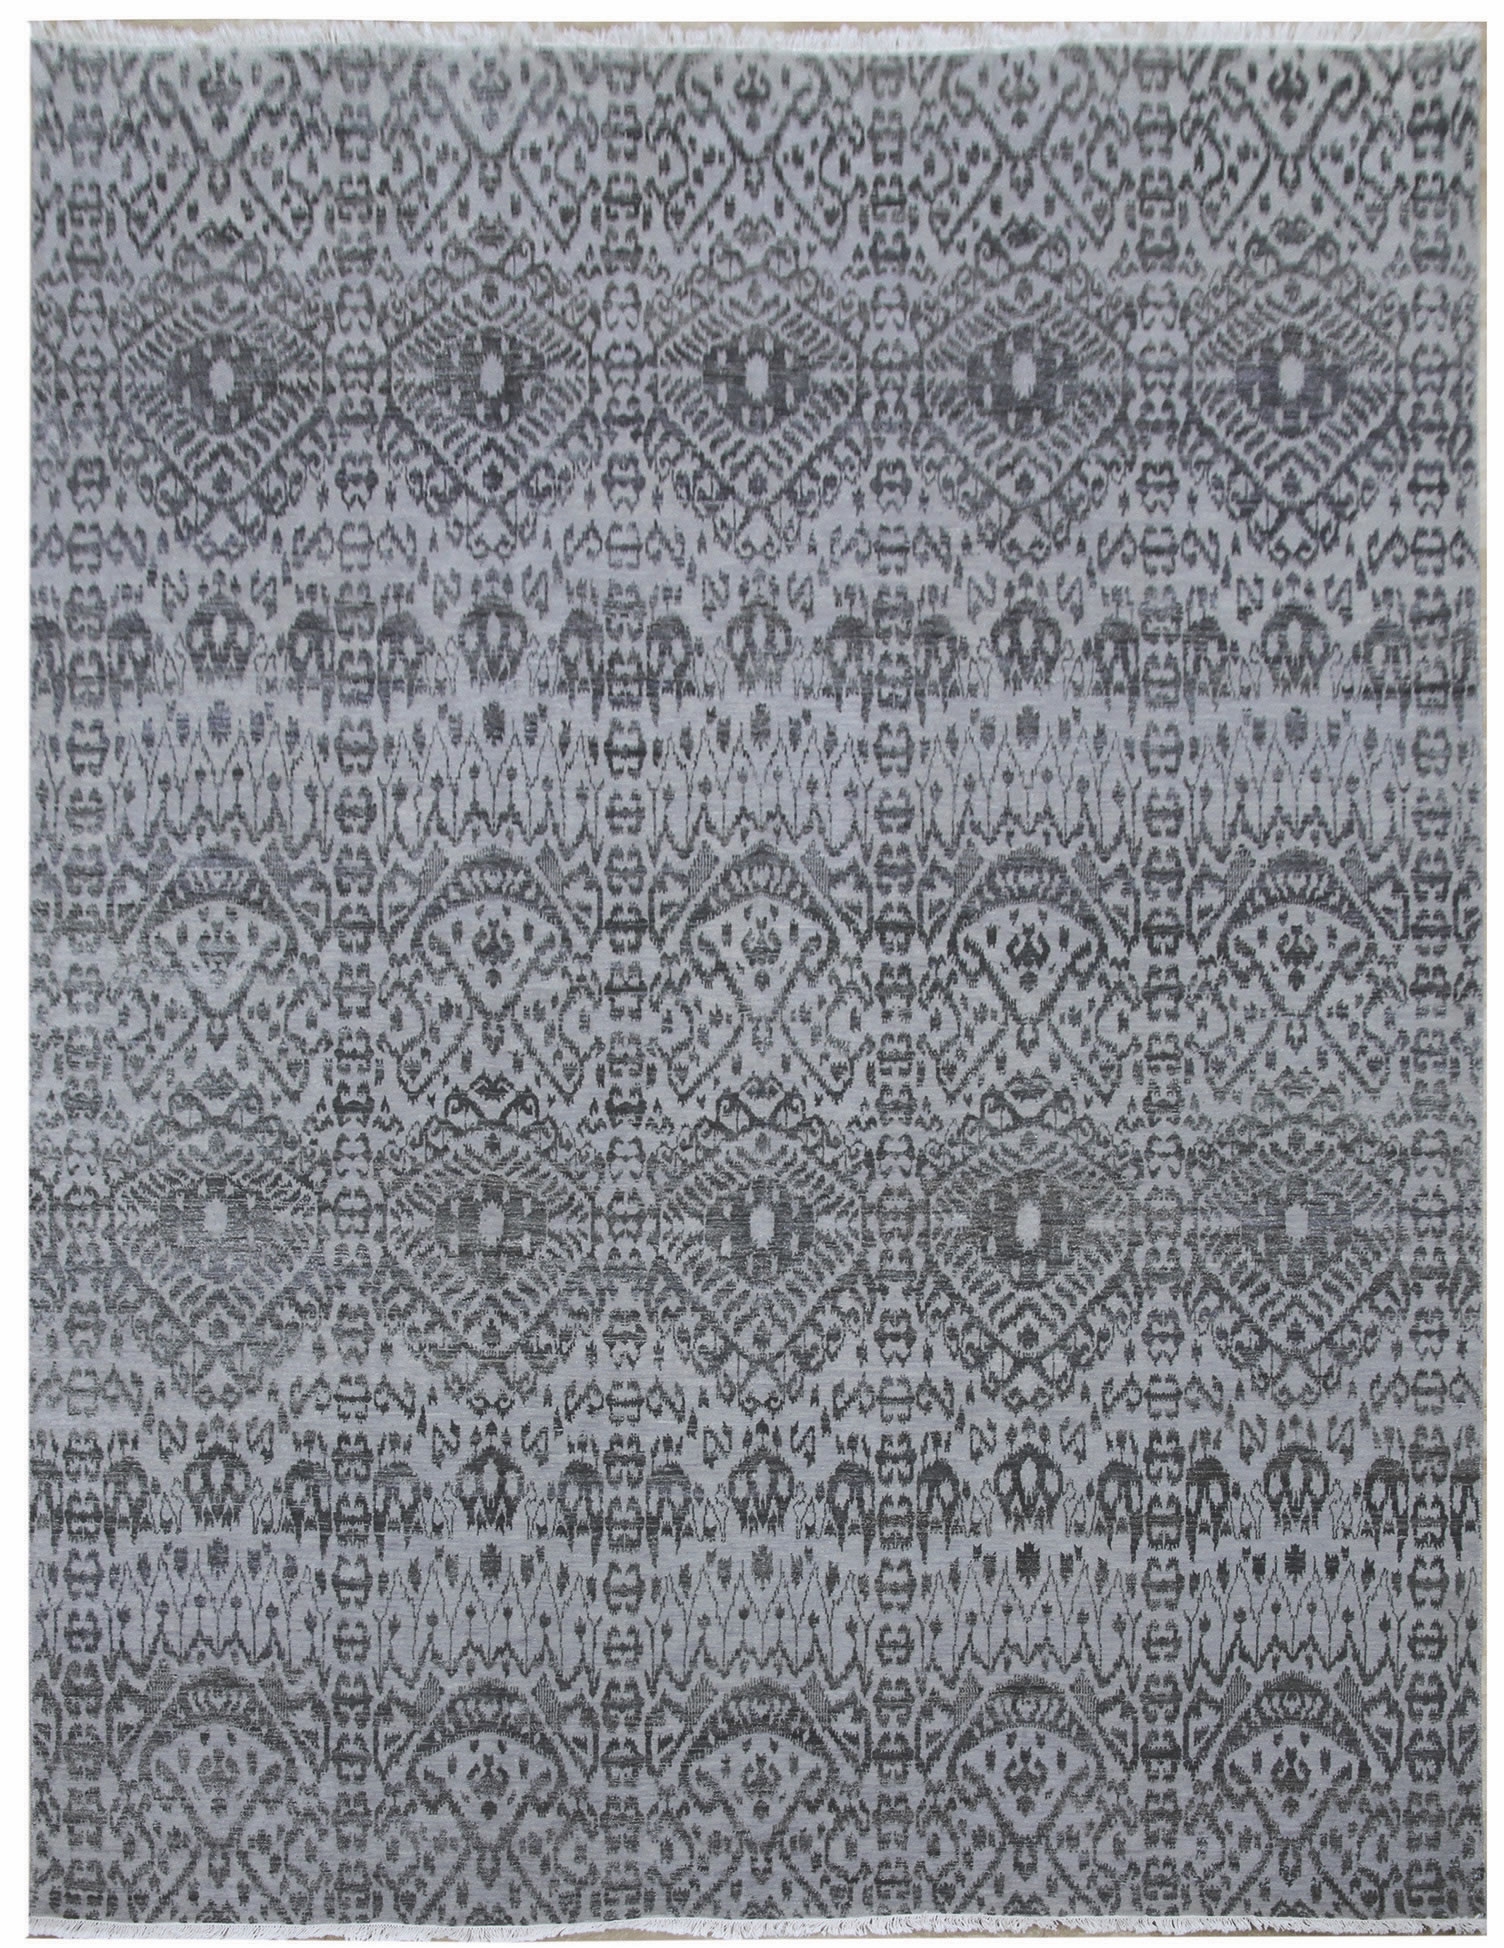 Ručne viazaný kusový koberec Diamond DC-EKT L silver / black - 365x550 cm Diamond Carpets koberce 